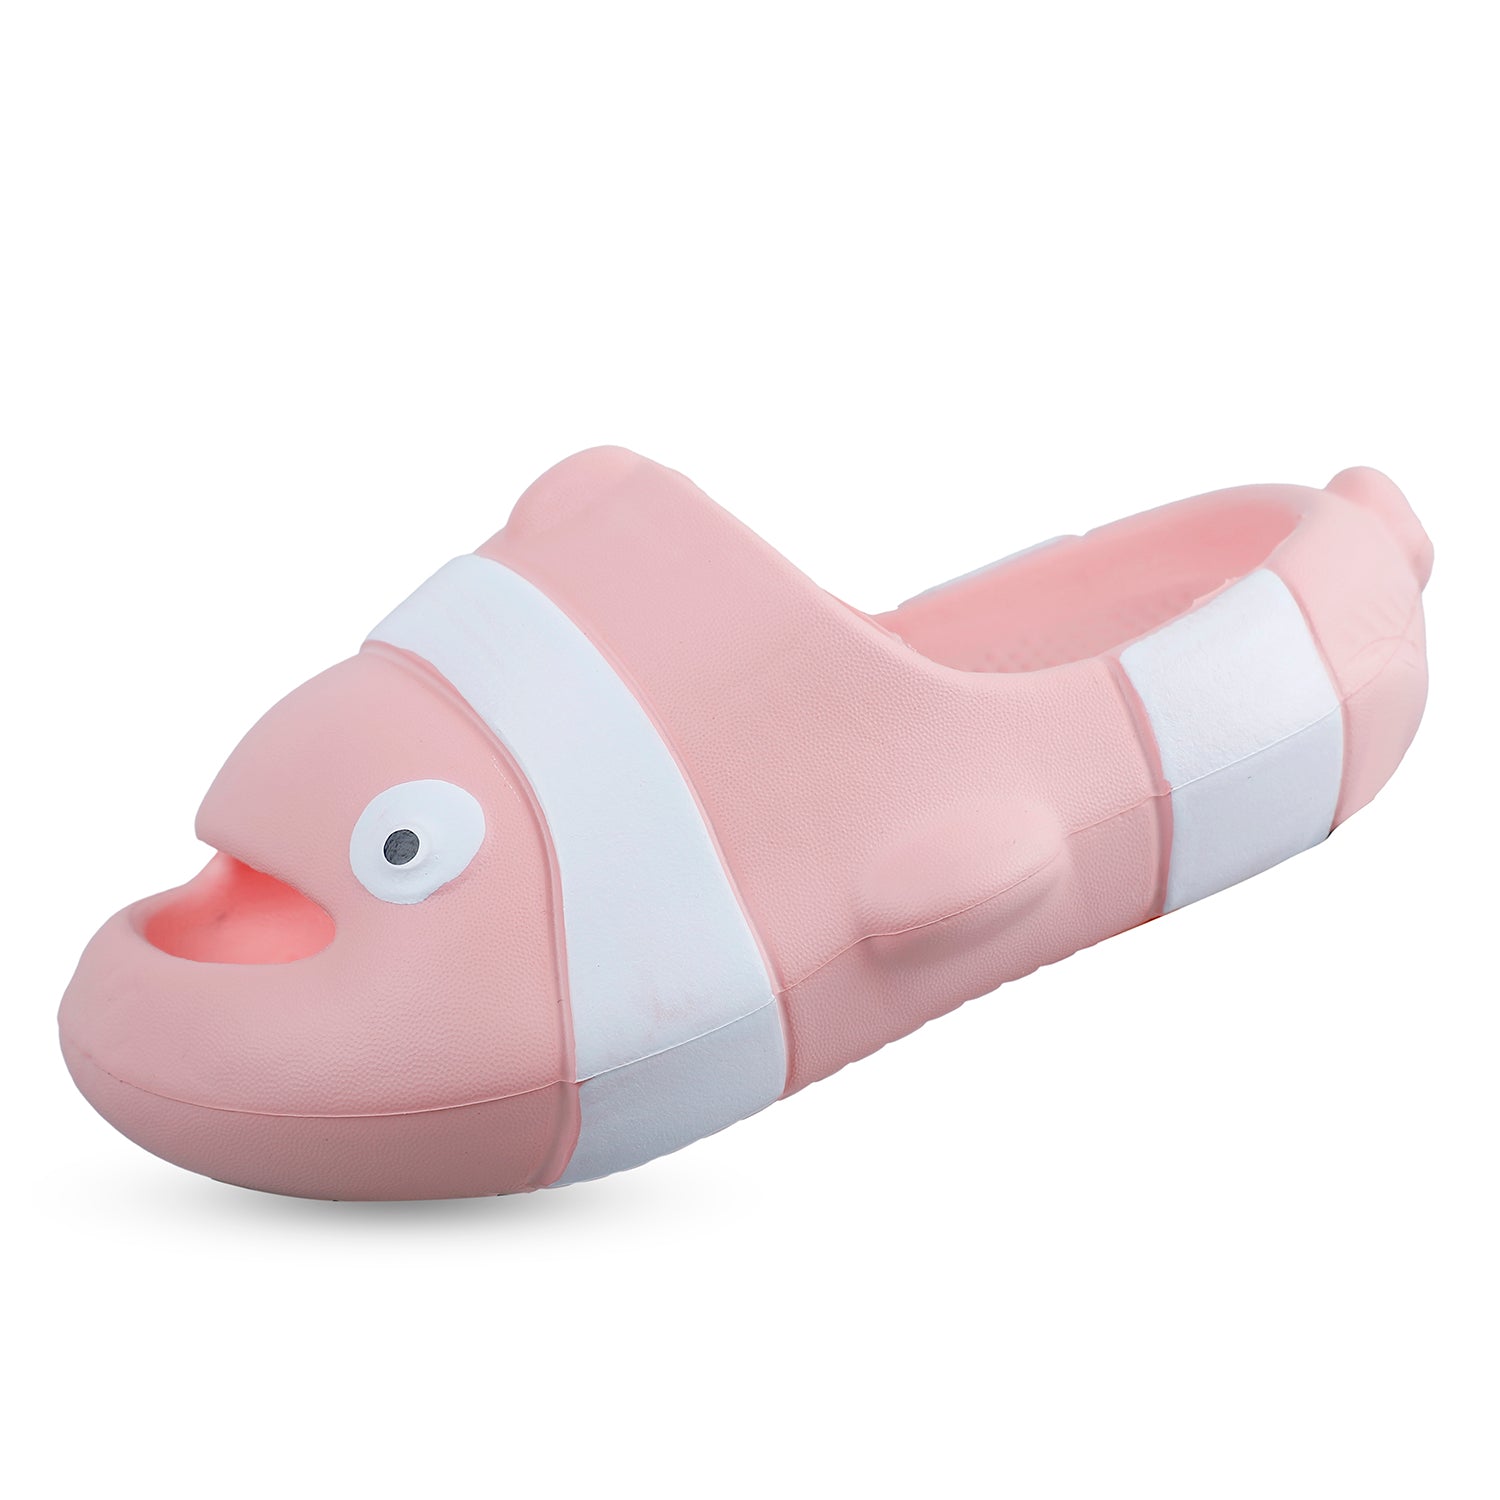 Baby Moo Nemo Waterproof Soft Slippers Anti-Skid Sliders - Pink - Baby Moo